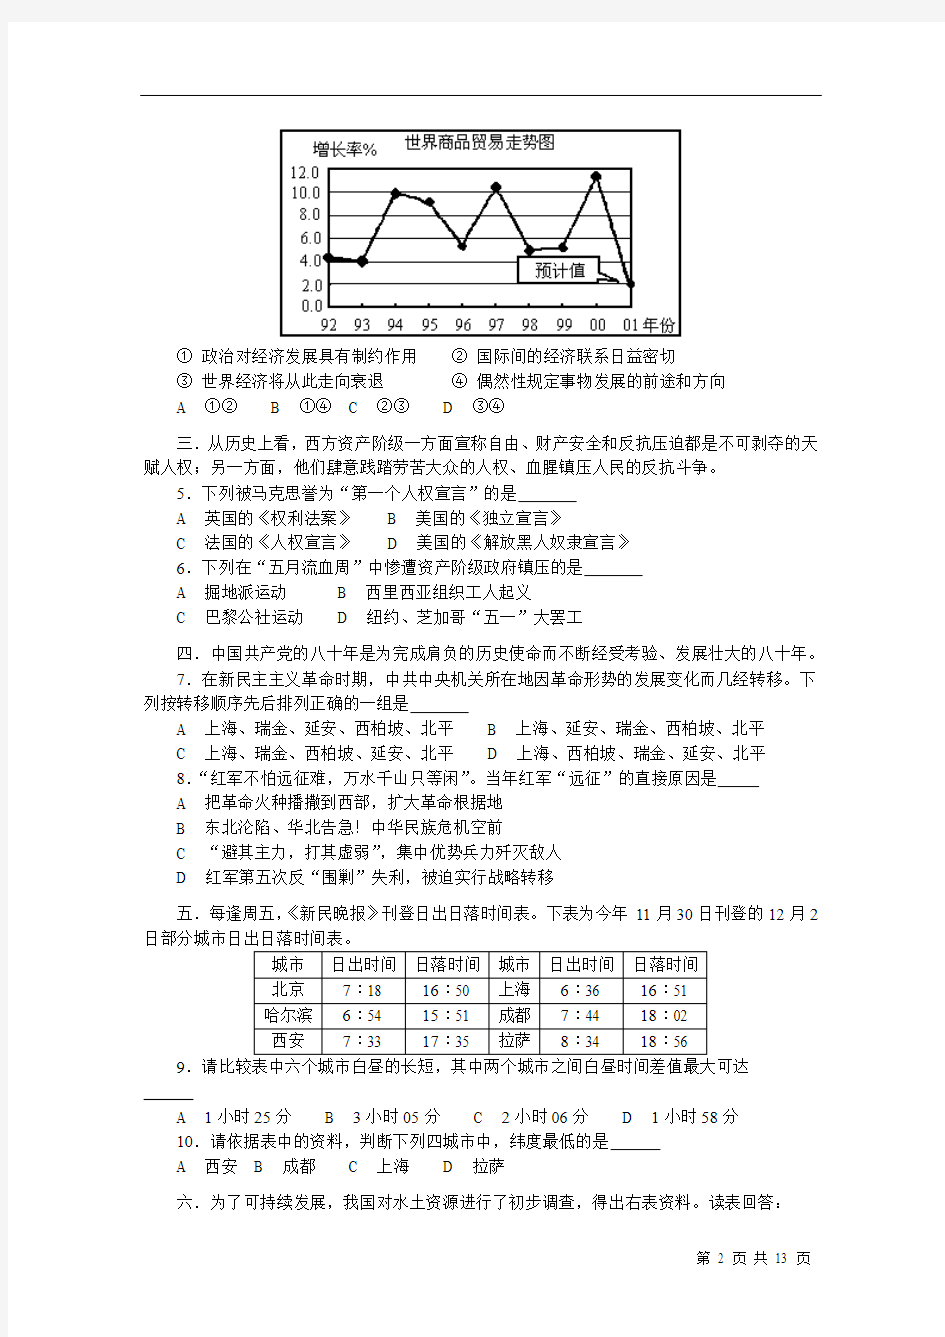 2002年普通高等学校春季招生考试综合能力测试试卷及答案(上海卷)